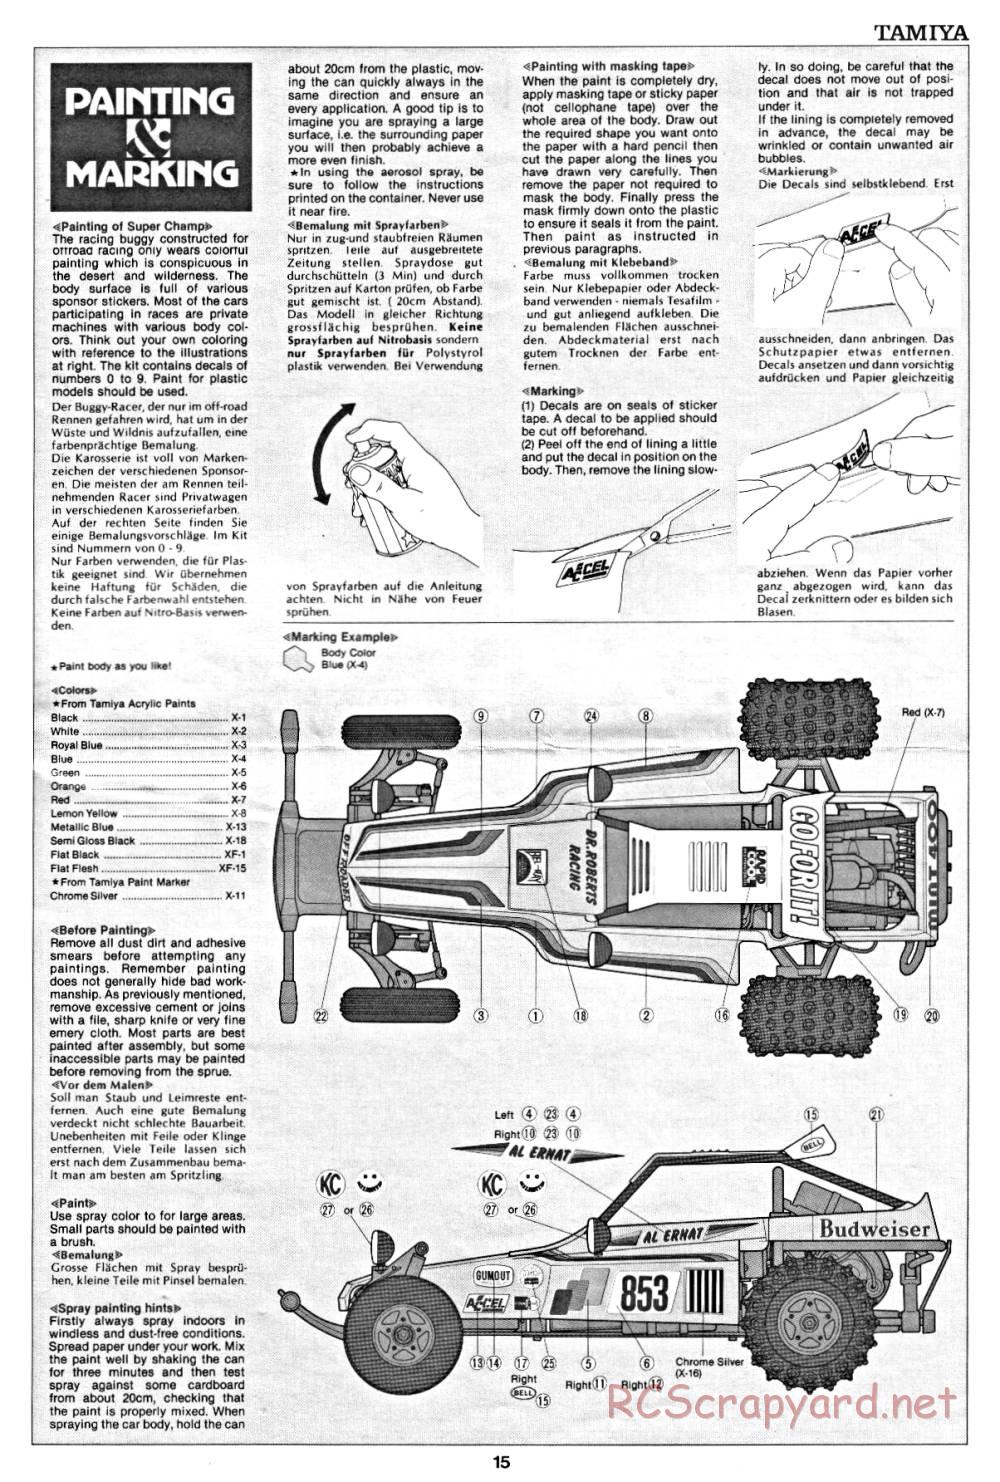 Tamiya - Super Champ - 58034 - Manual - Page 15